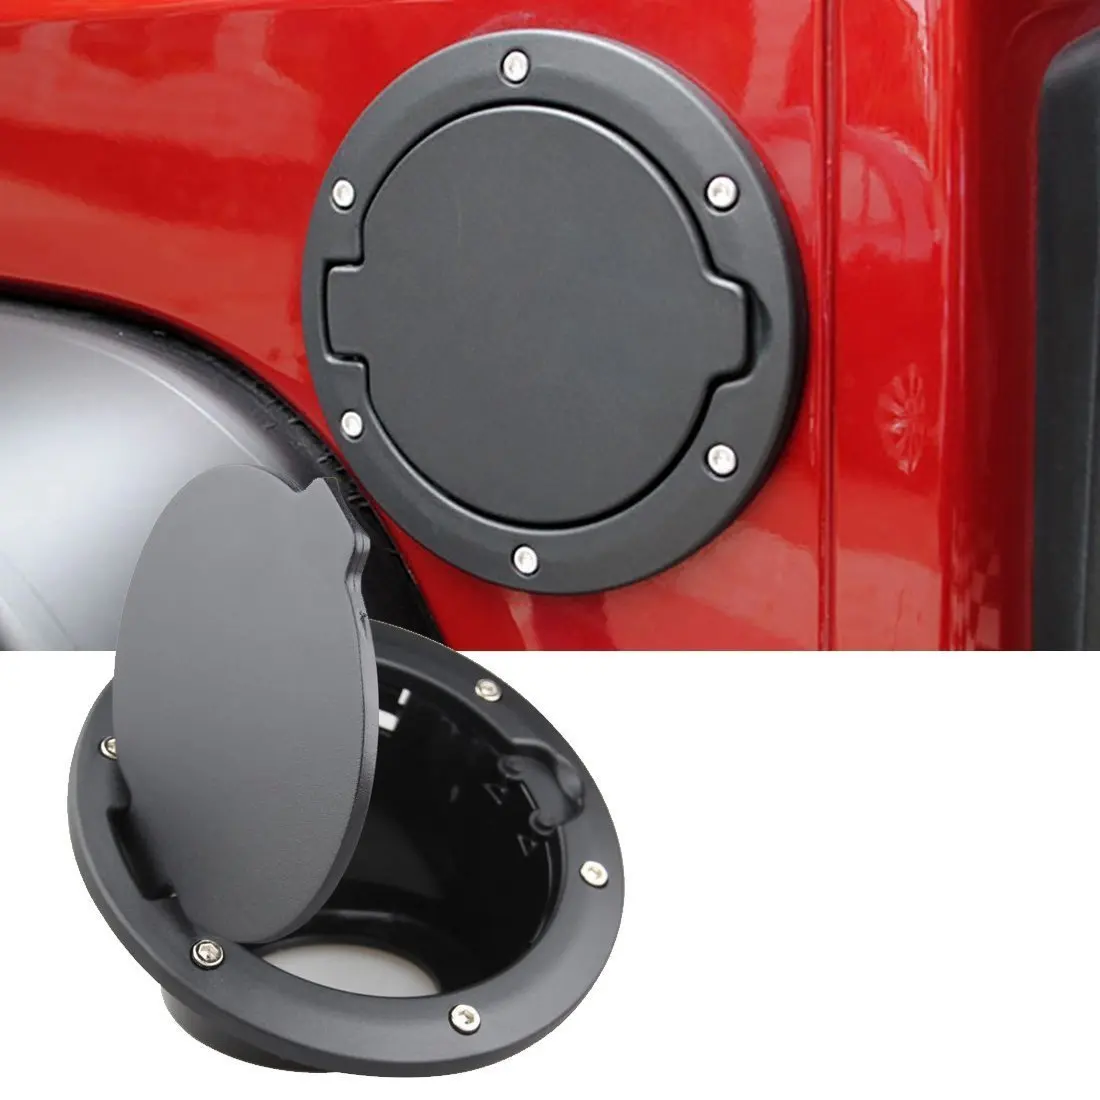 Best Price Exterior Car Accessories Fuel Filler Door Cover Gas Tank Cap